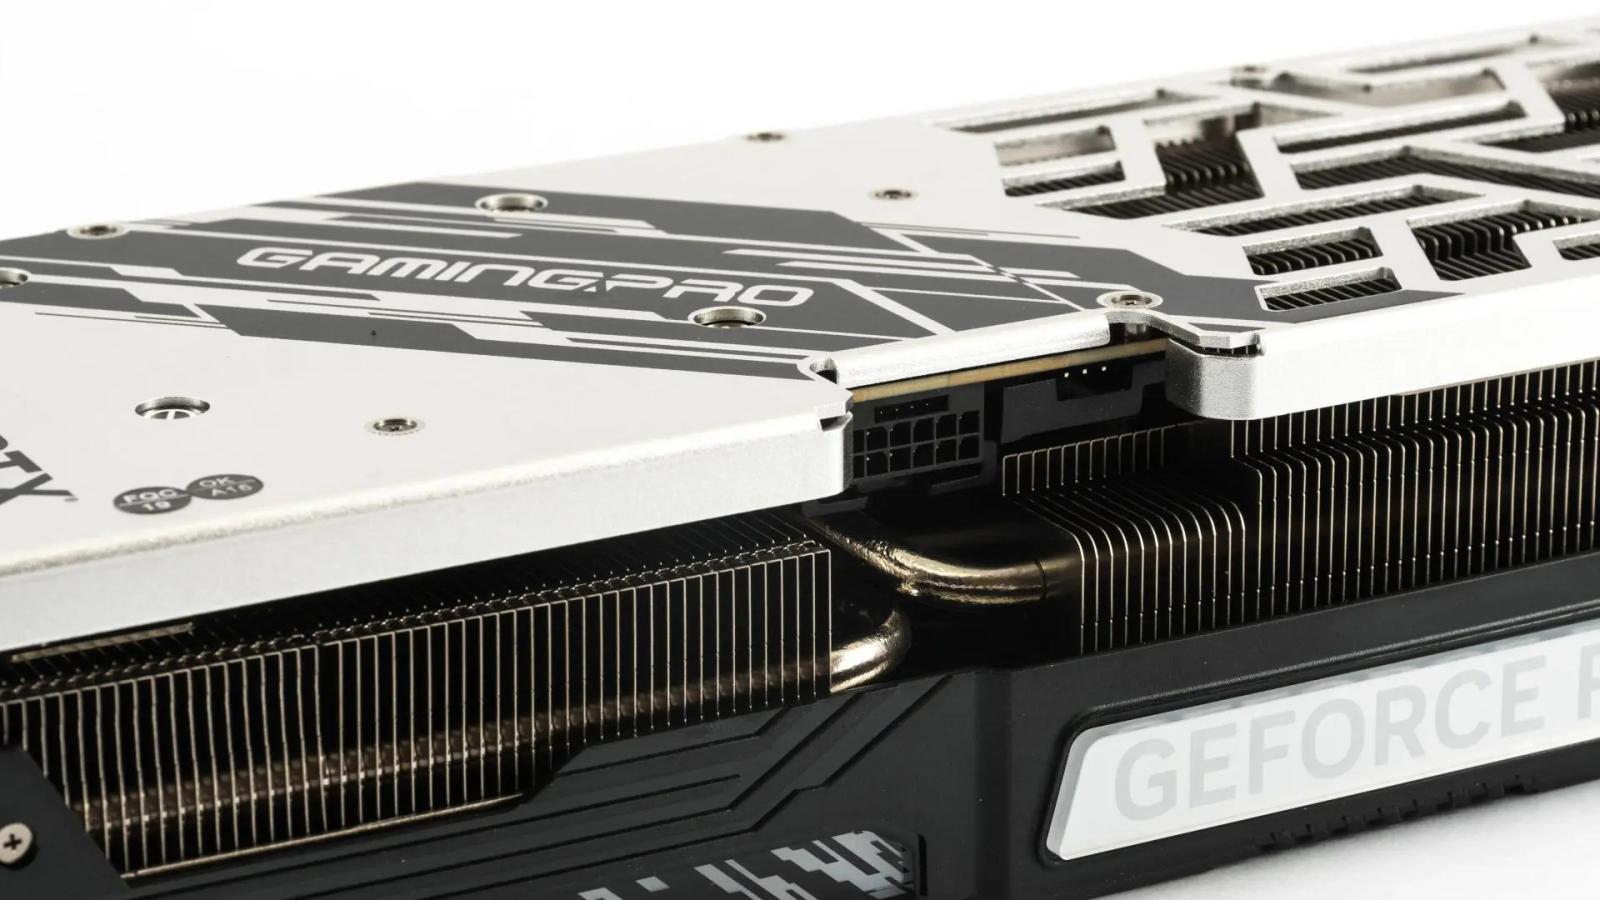 Test Palit GeForce RTX 4080 Super GamingPro OC 16GB: dobrý mix vlastností a příznivá cena